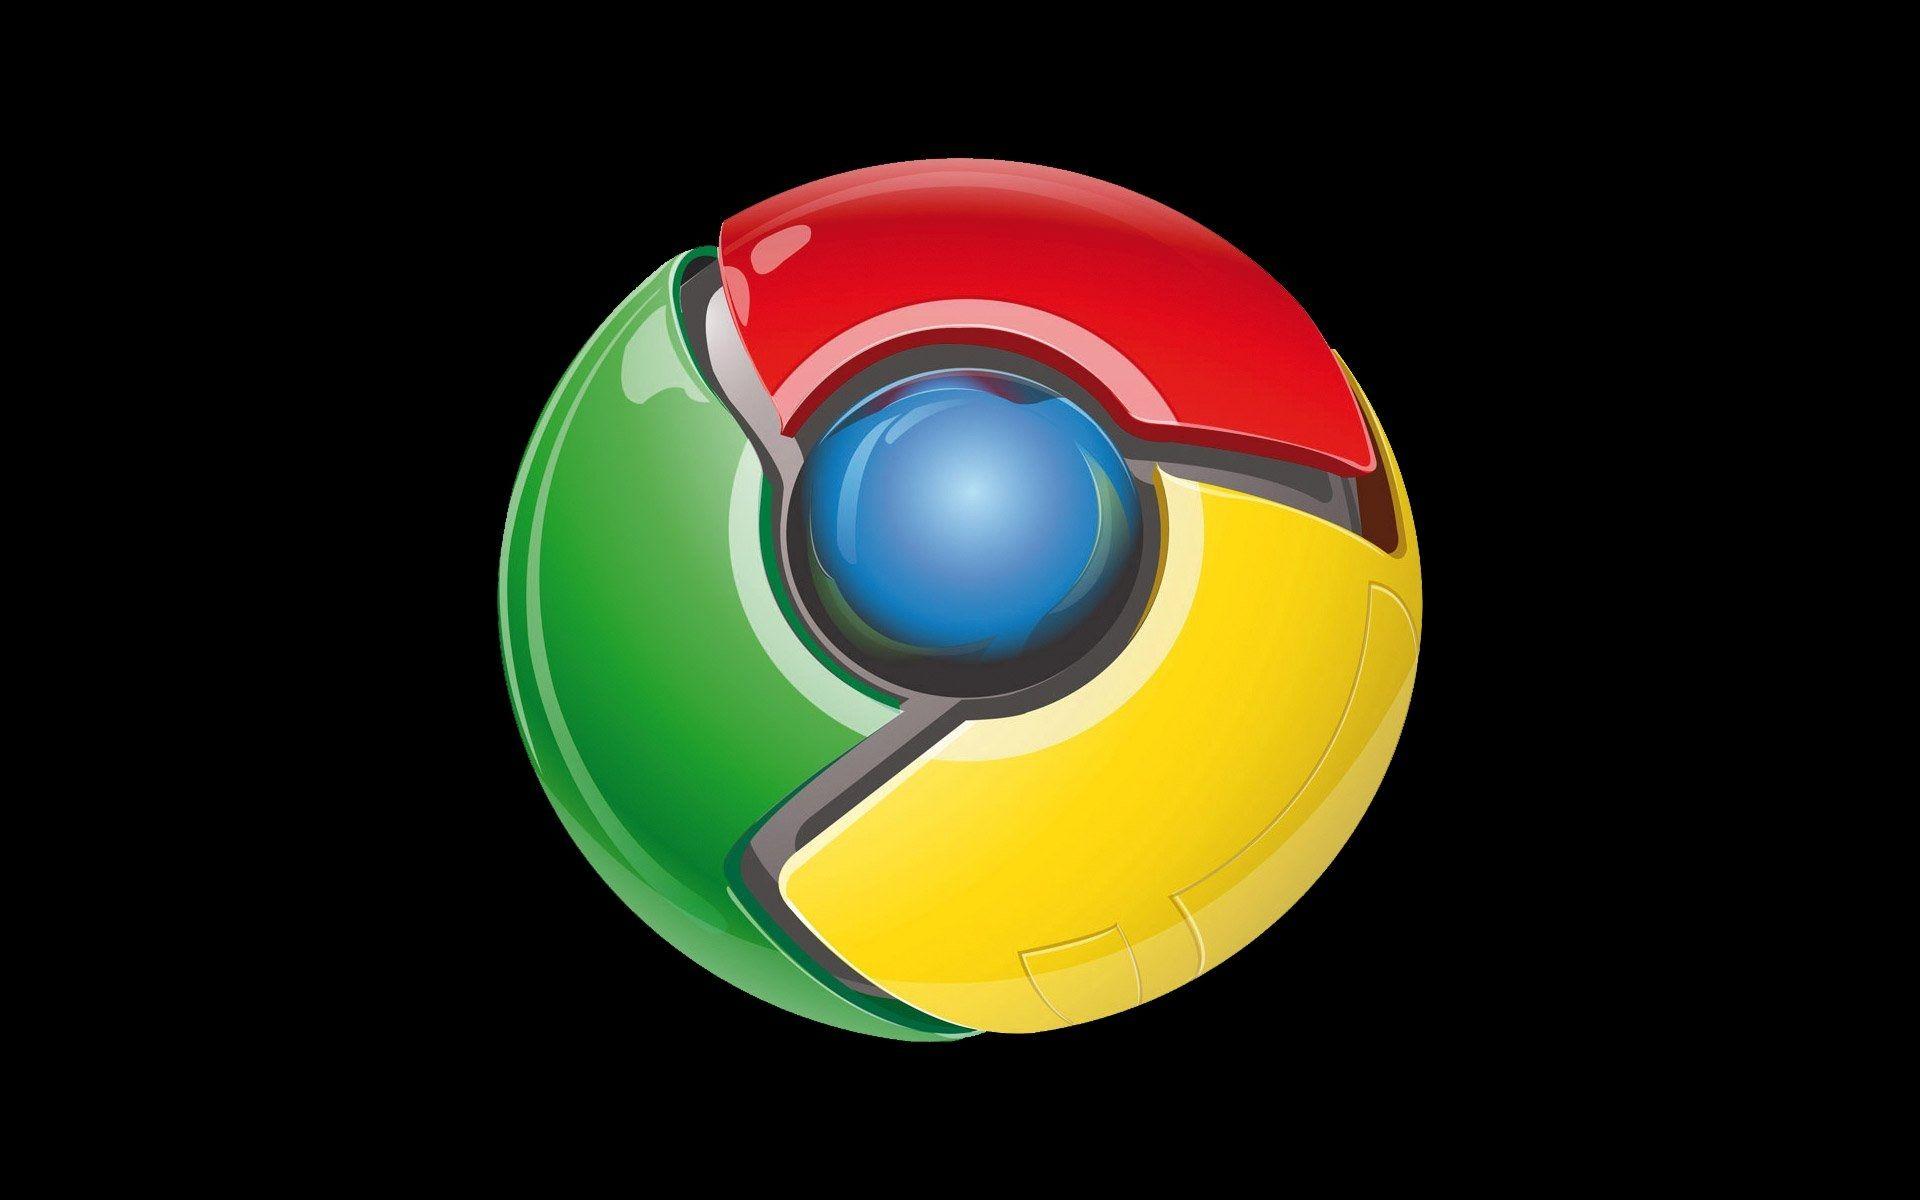 Sáng tạo và đầy ý tưởng - hình nền Google Logo đen sẽ tạo nên một trải nghiệm trực quan và khác biệt cho những người sử dụng trình duyệt Google Chrome. Khám phá ngay hình ảnh để cảm nhận sức mạnh và sự tuyệt vời của biểu tượng phổ biến này.